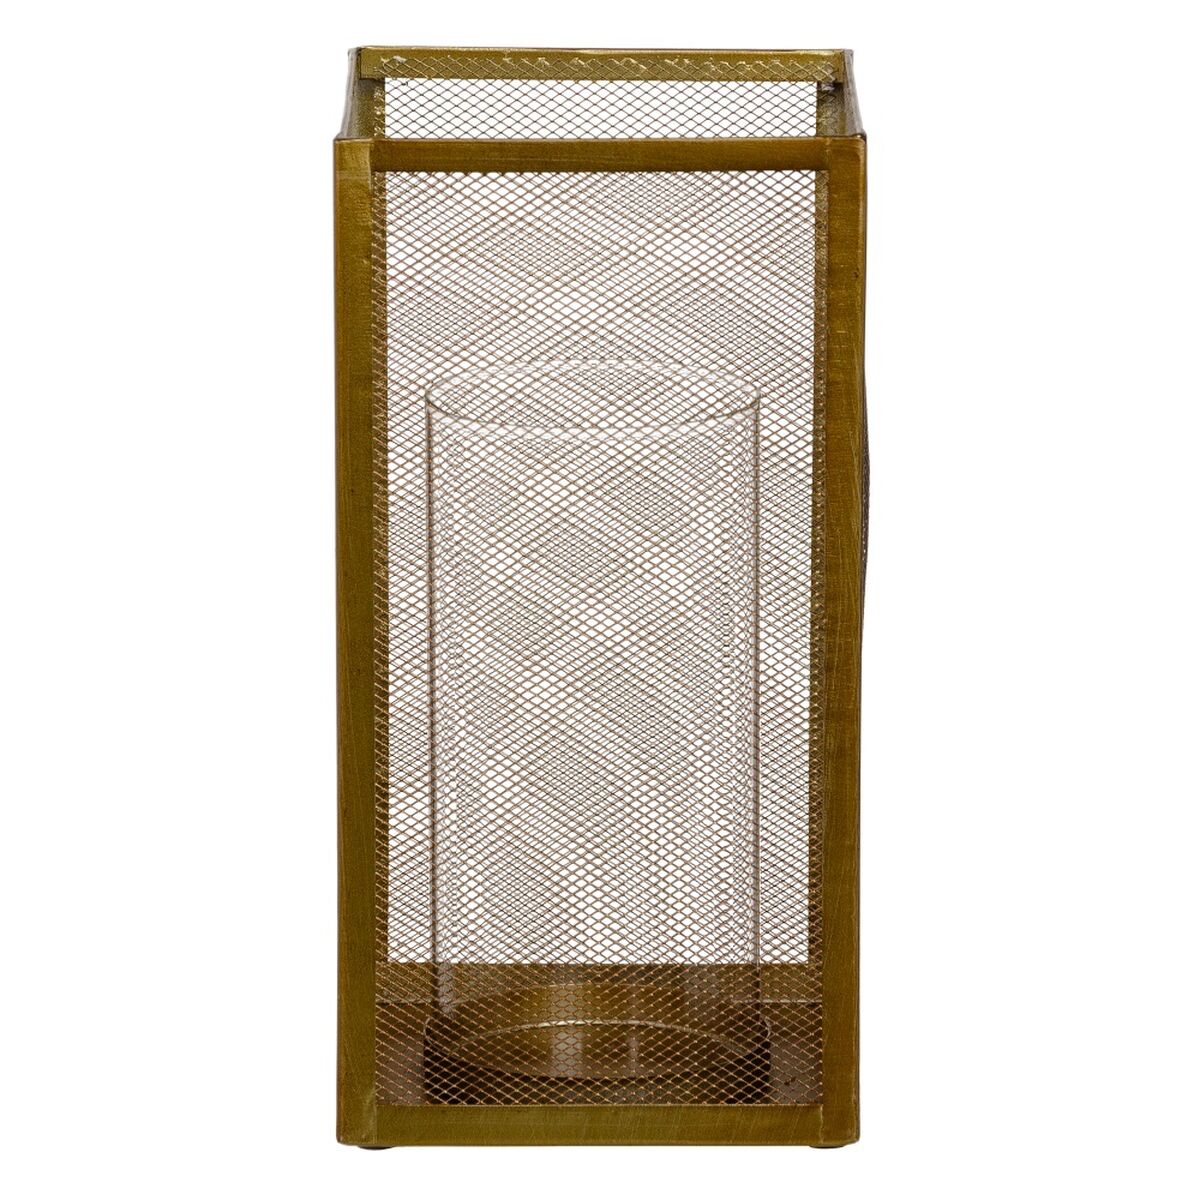 Kerzenschale Kristall Gold Metall 18 x 18 x 35,5 cm